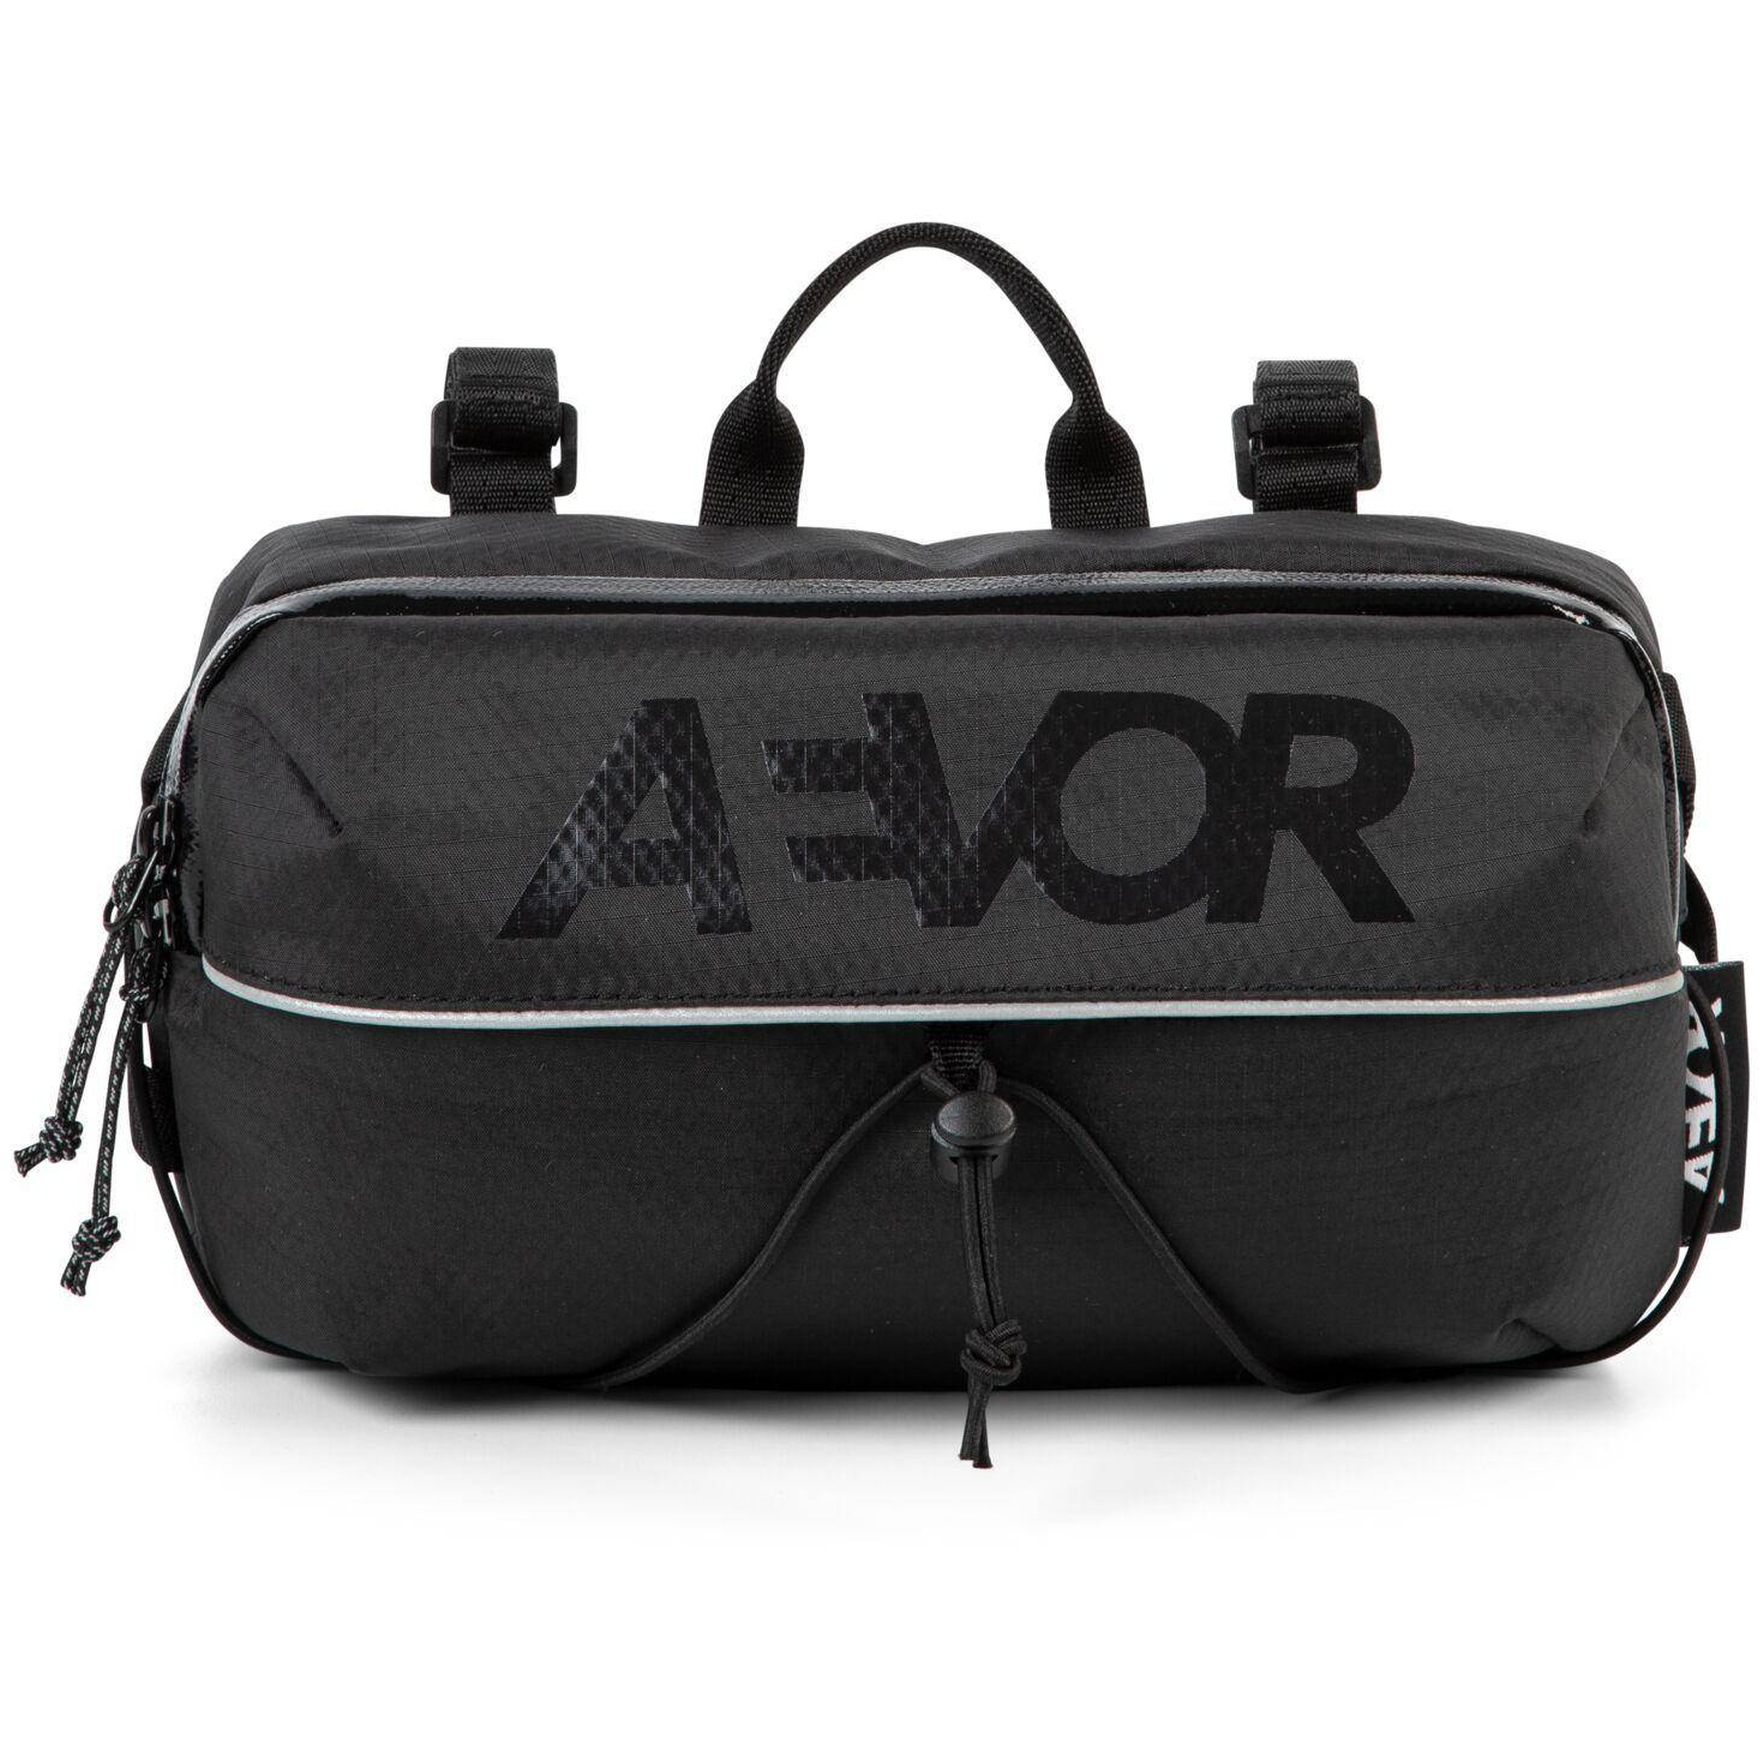 Picture of AEVOR Bar Bag - Proof Black